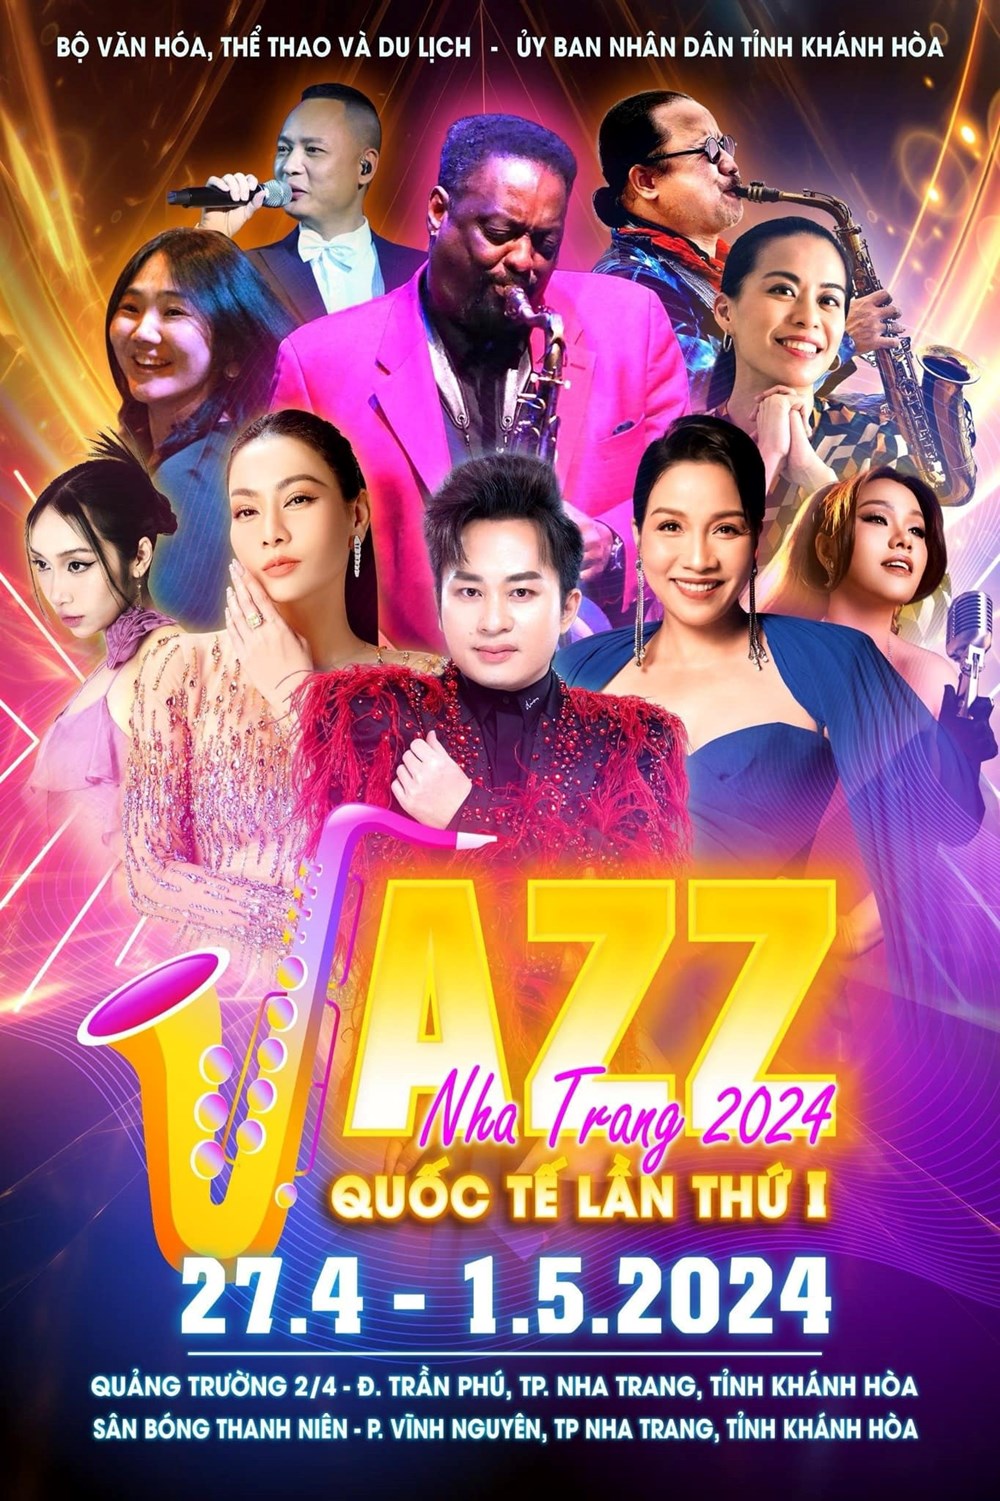  Chất Việt trong bức tranh Jazz đa sắc màu - ảnh 1